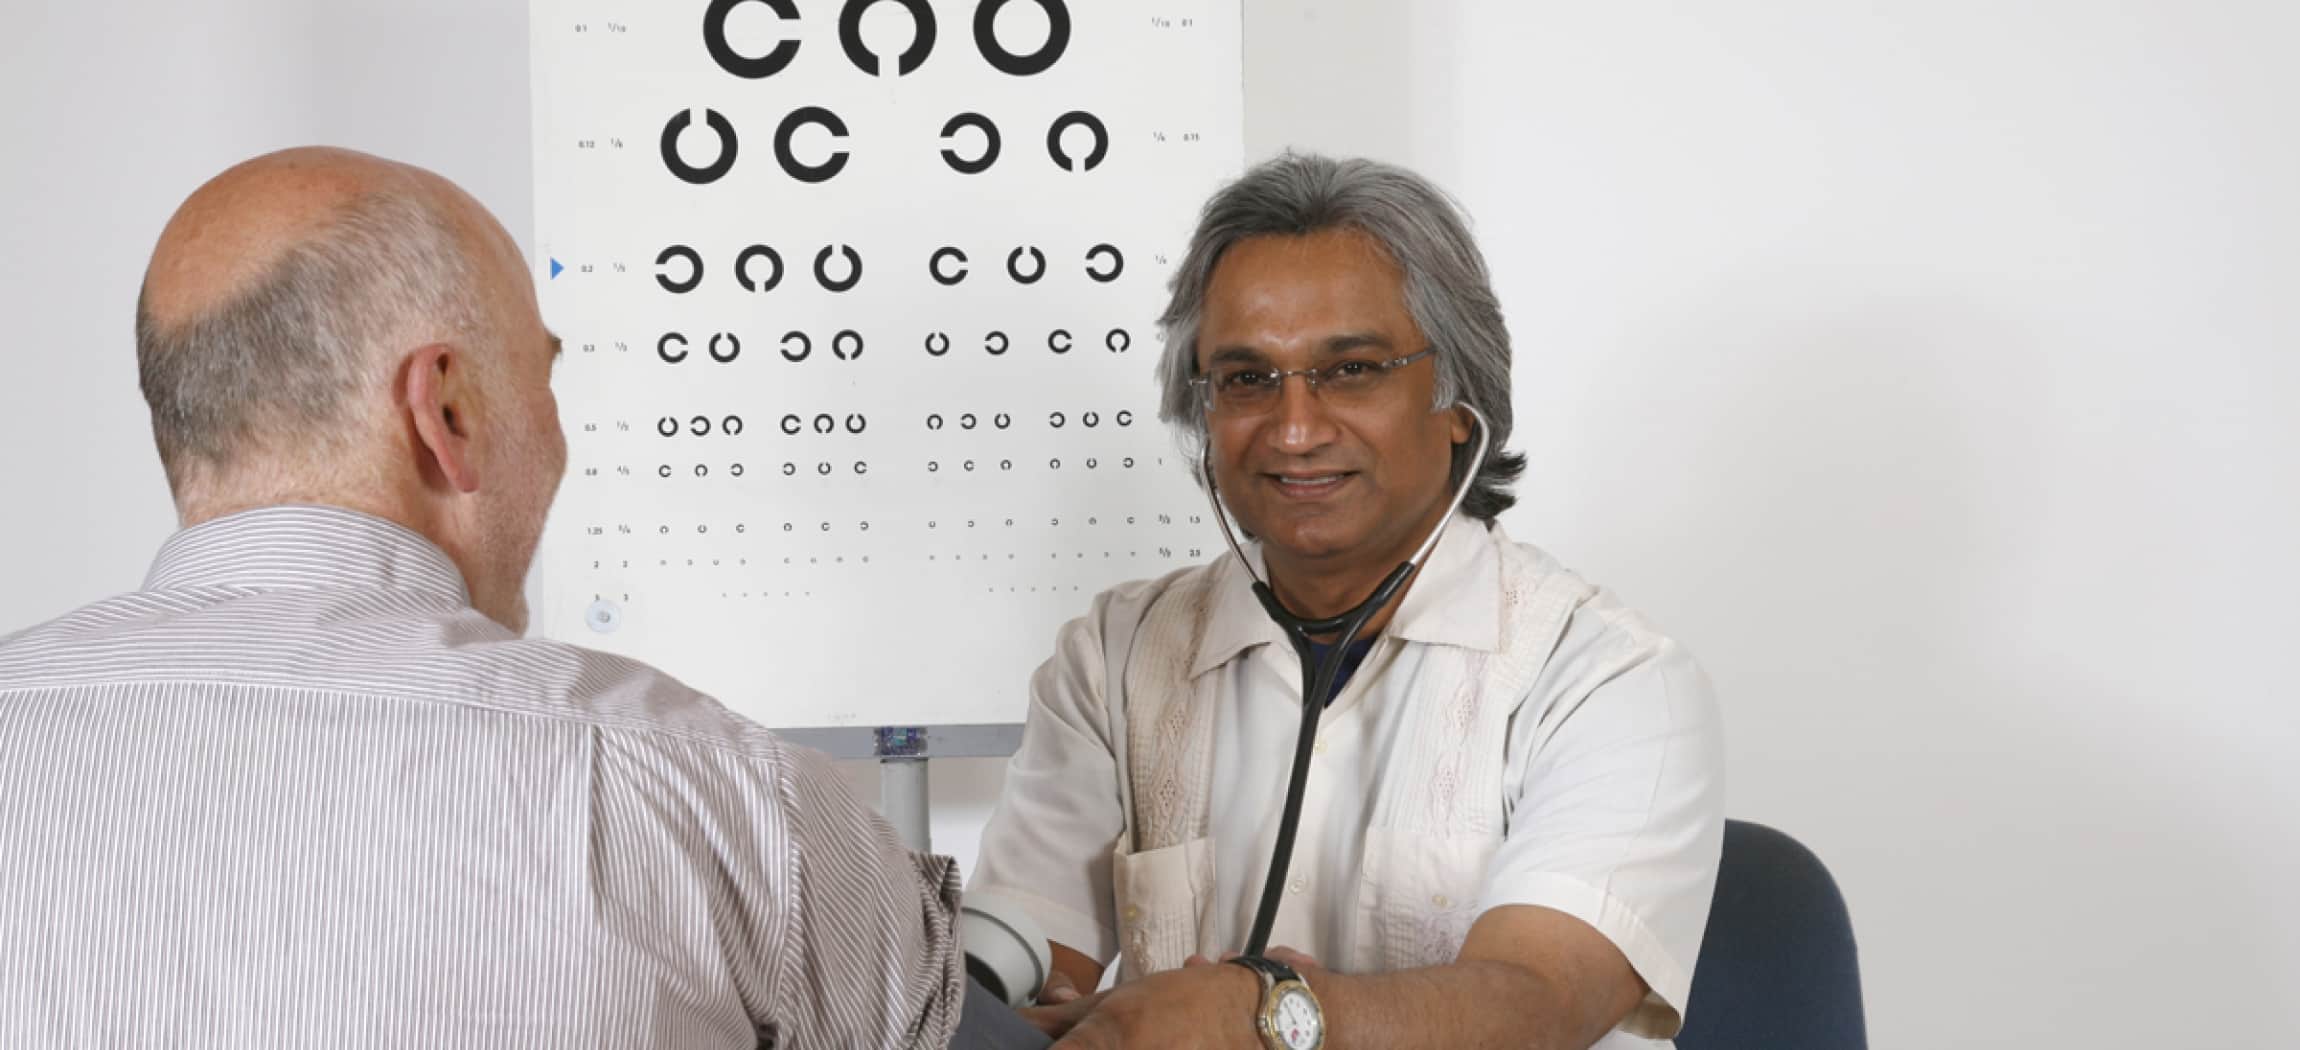 Arts doet een bloeddrukmeter om bij arm van man met poster oogtest